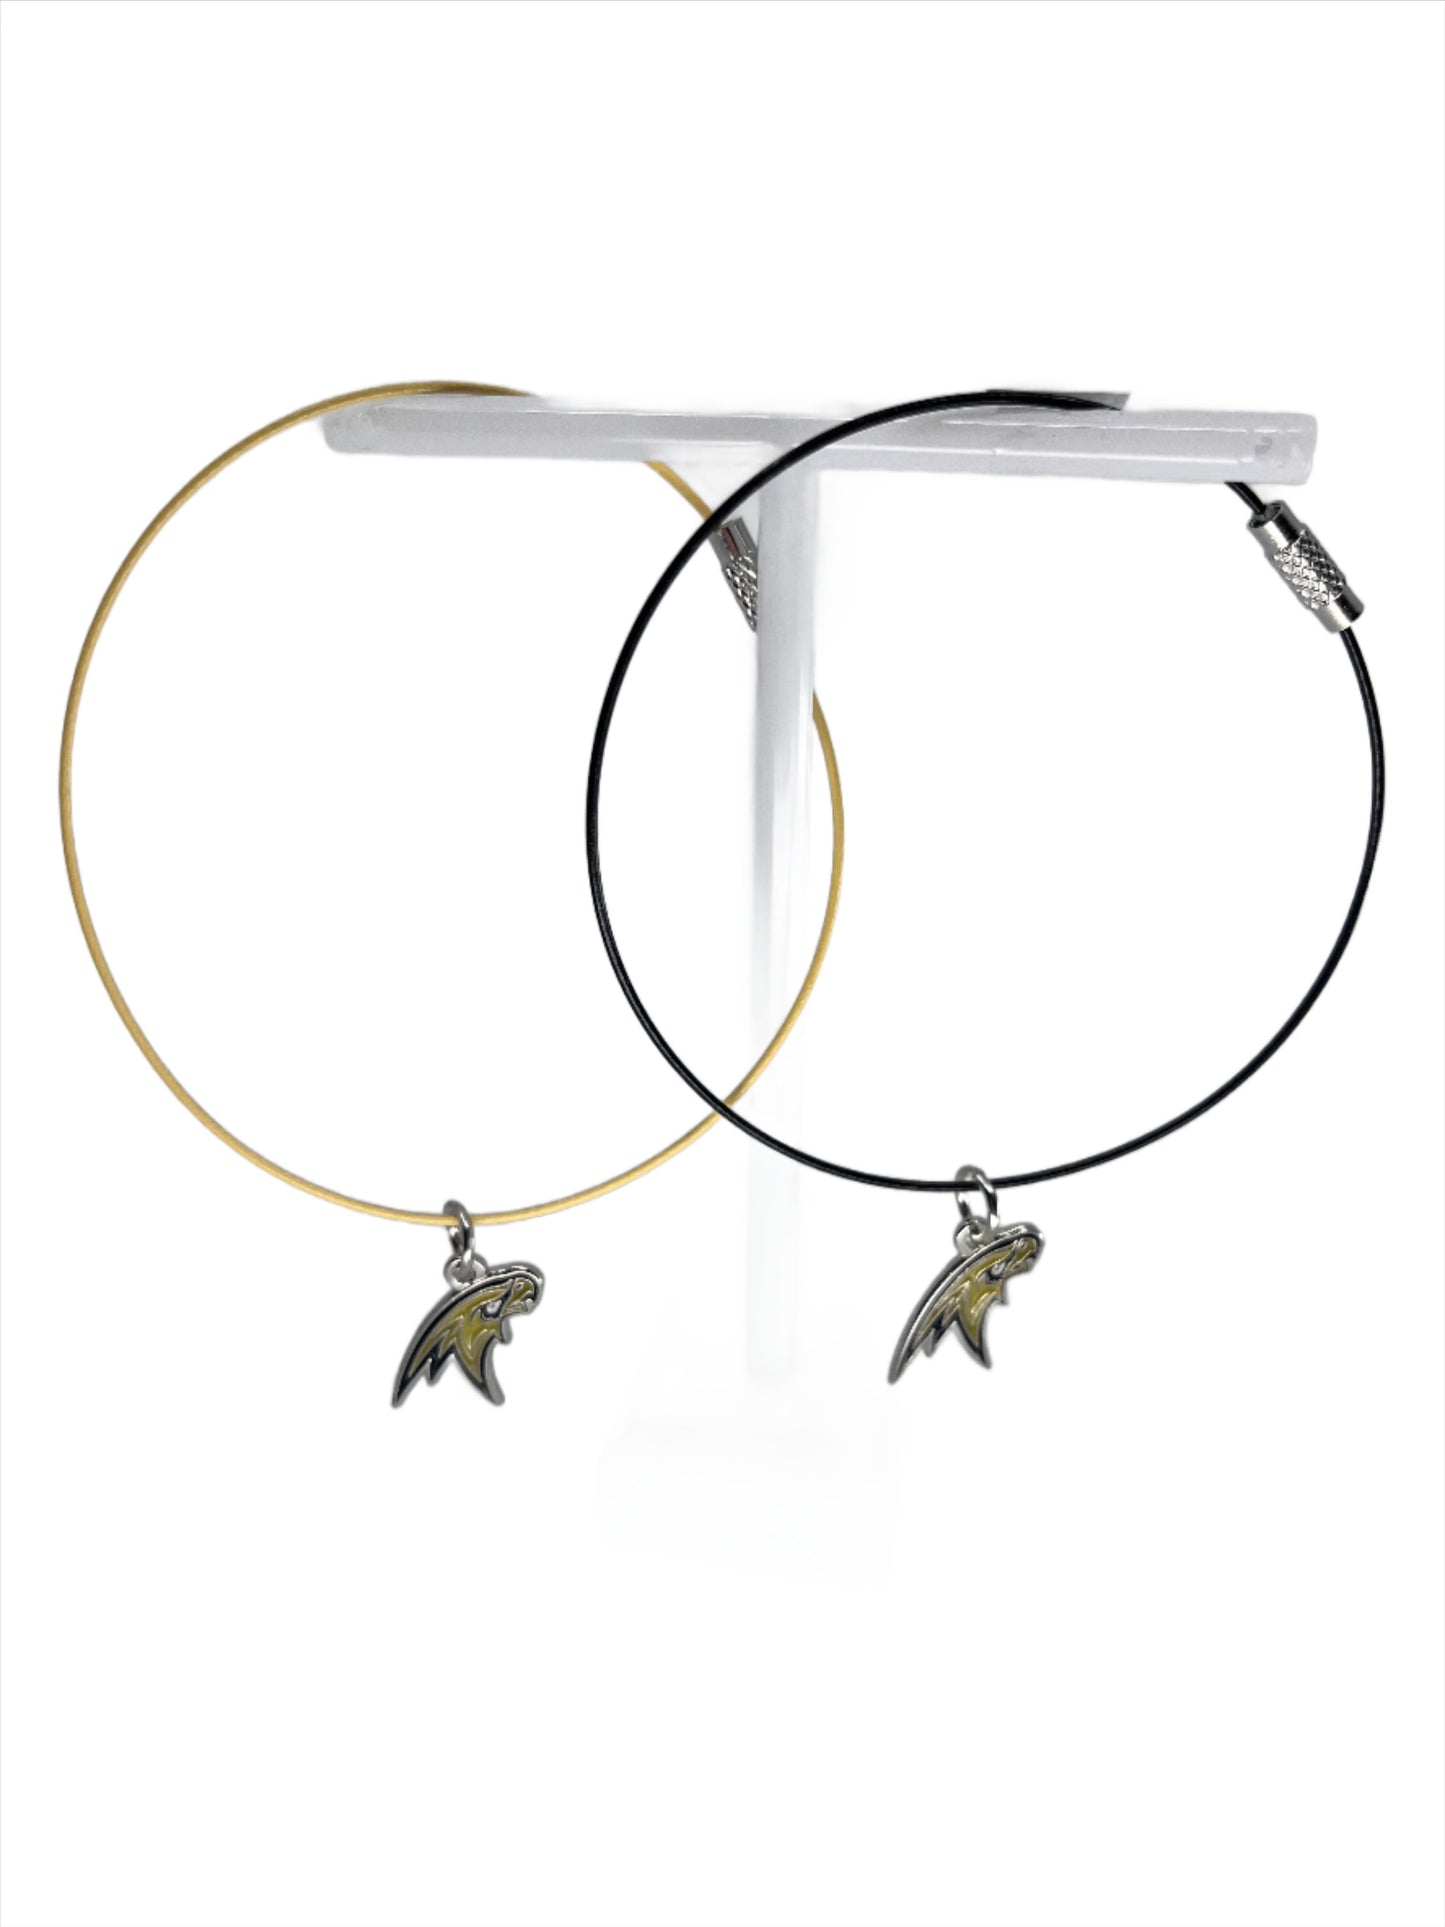 Corning Hawks Steel Wire Bracelet or Anklet